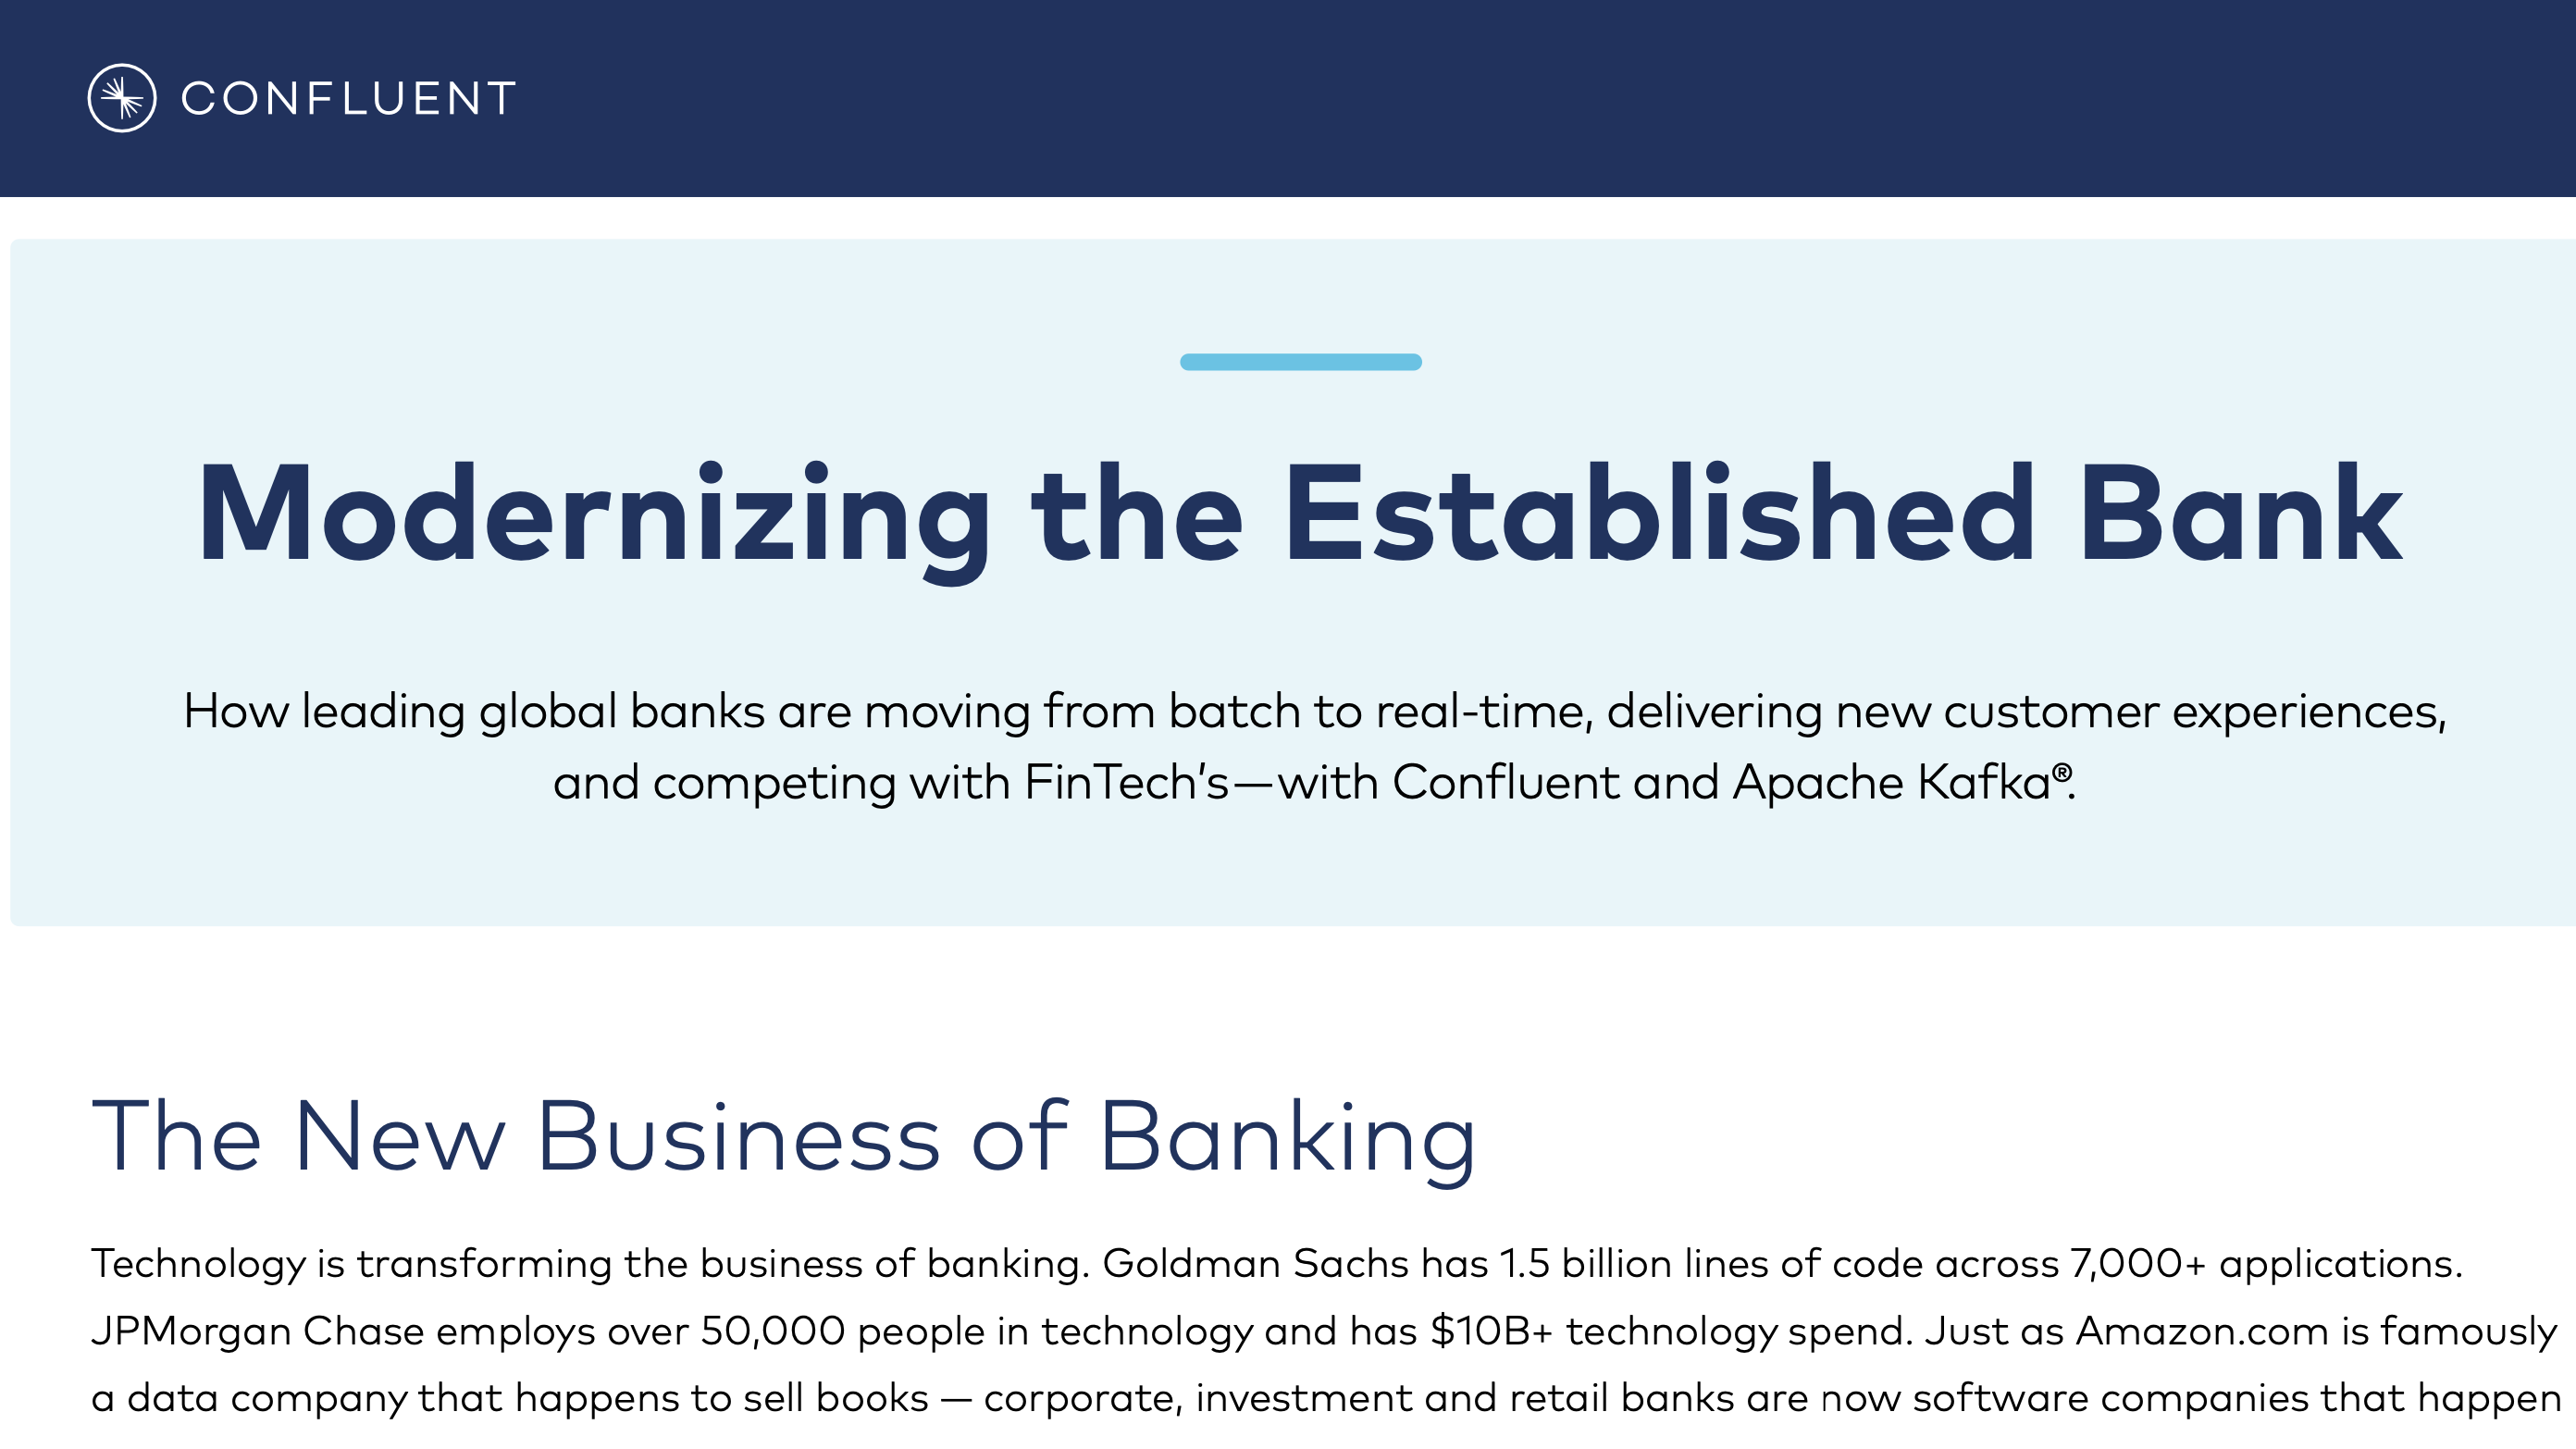 Modernizing the Established Bank